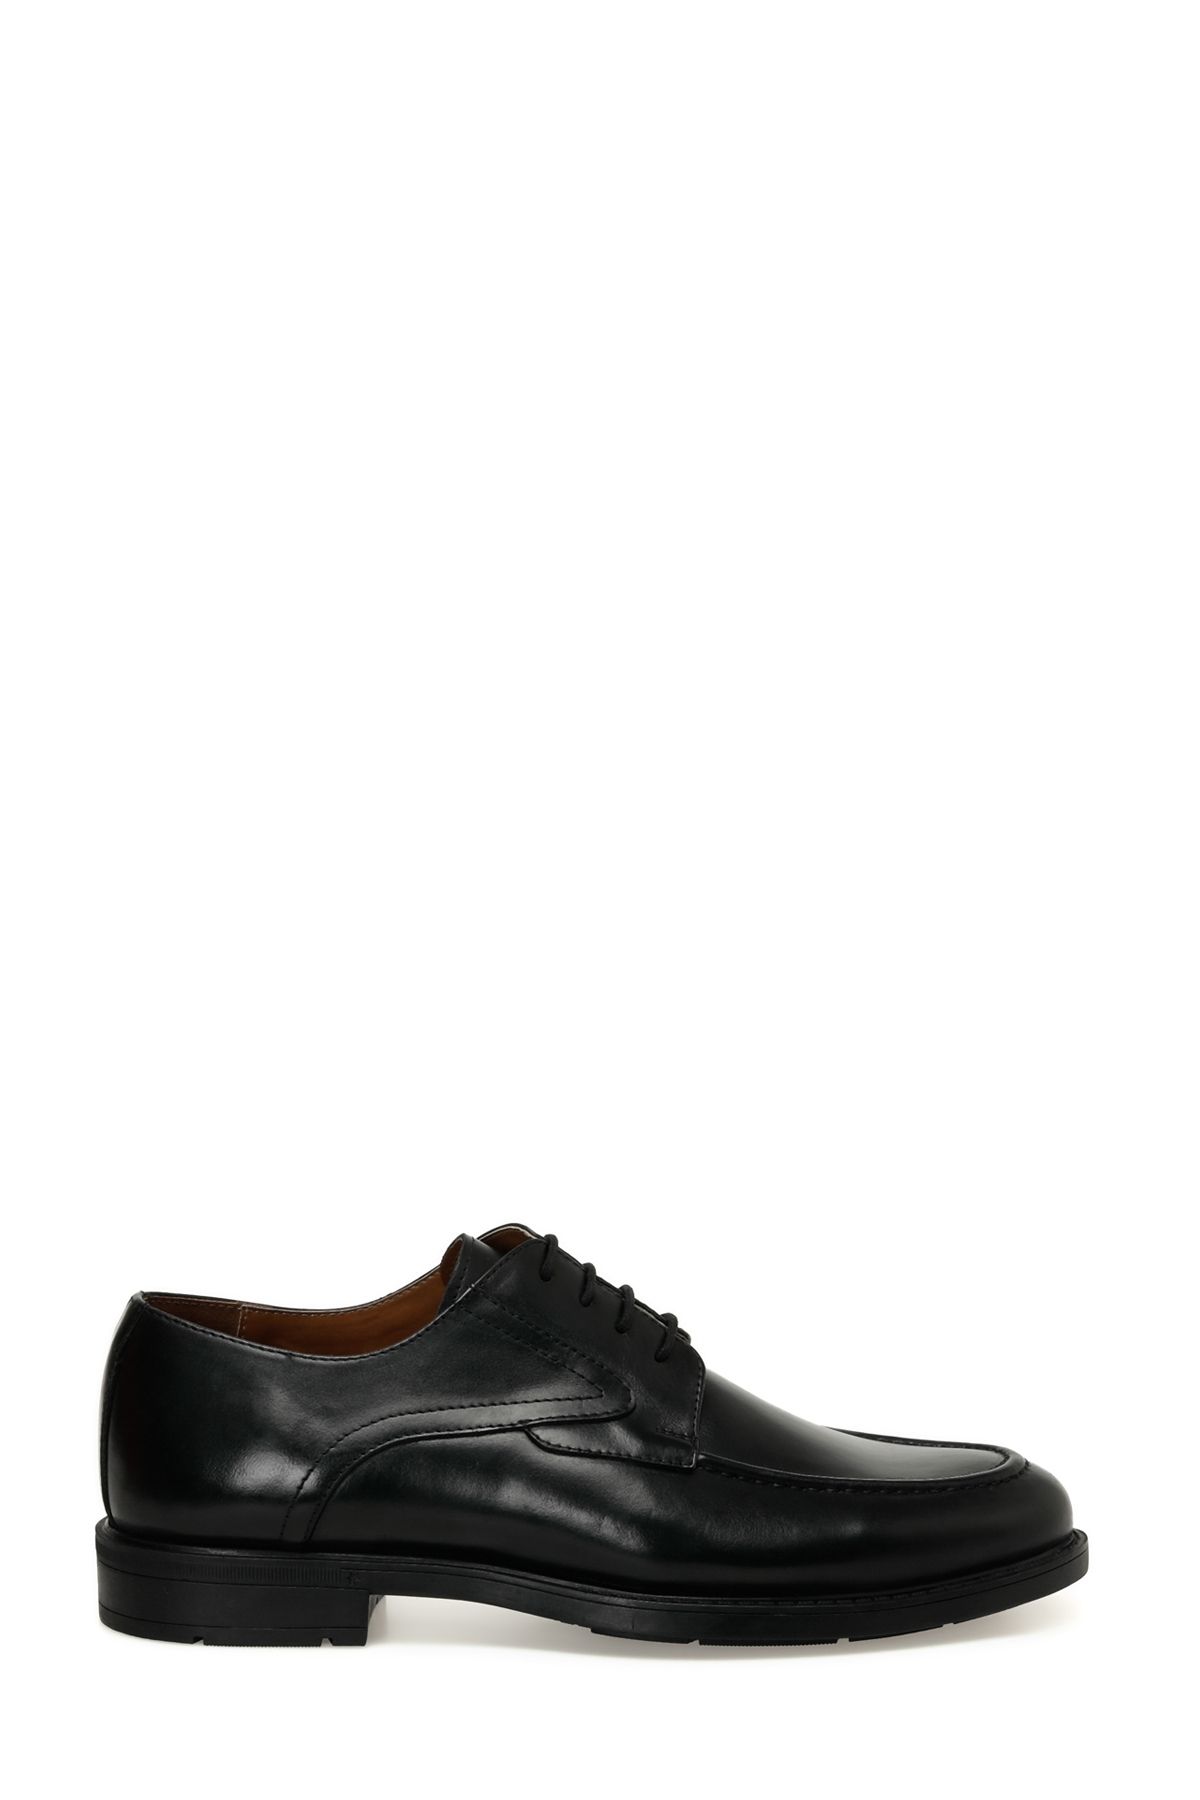 Garamond KARYA 4FX Siyah Erkek Klasik Ayakkabı